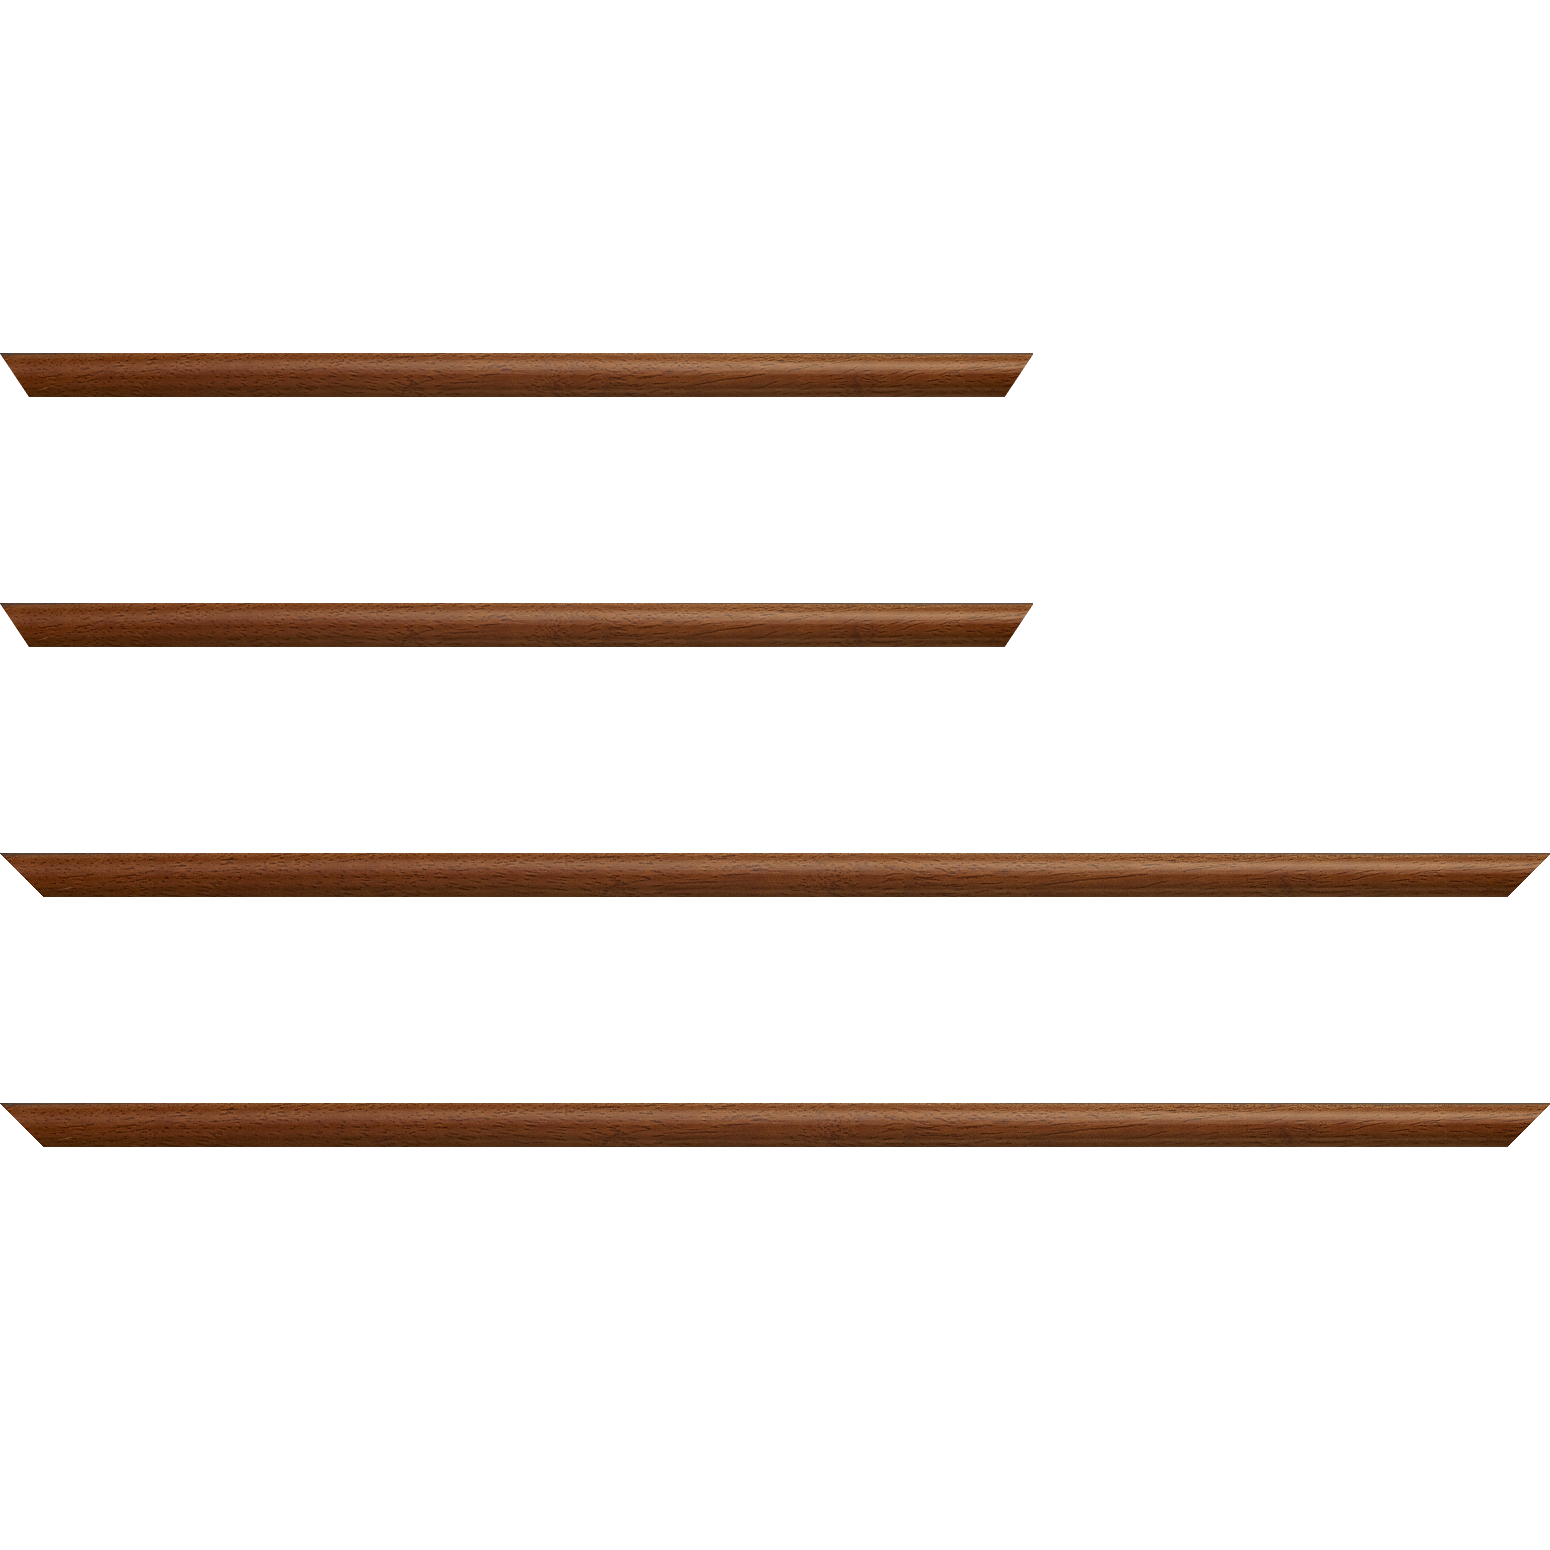 Baguette bois profil demi rond largeur 1.5cm couleur marron ton bois extérieur ébène - 18x24